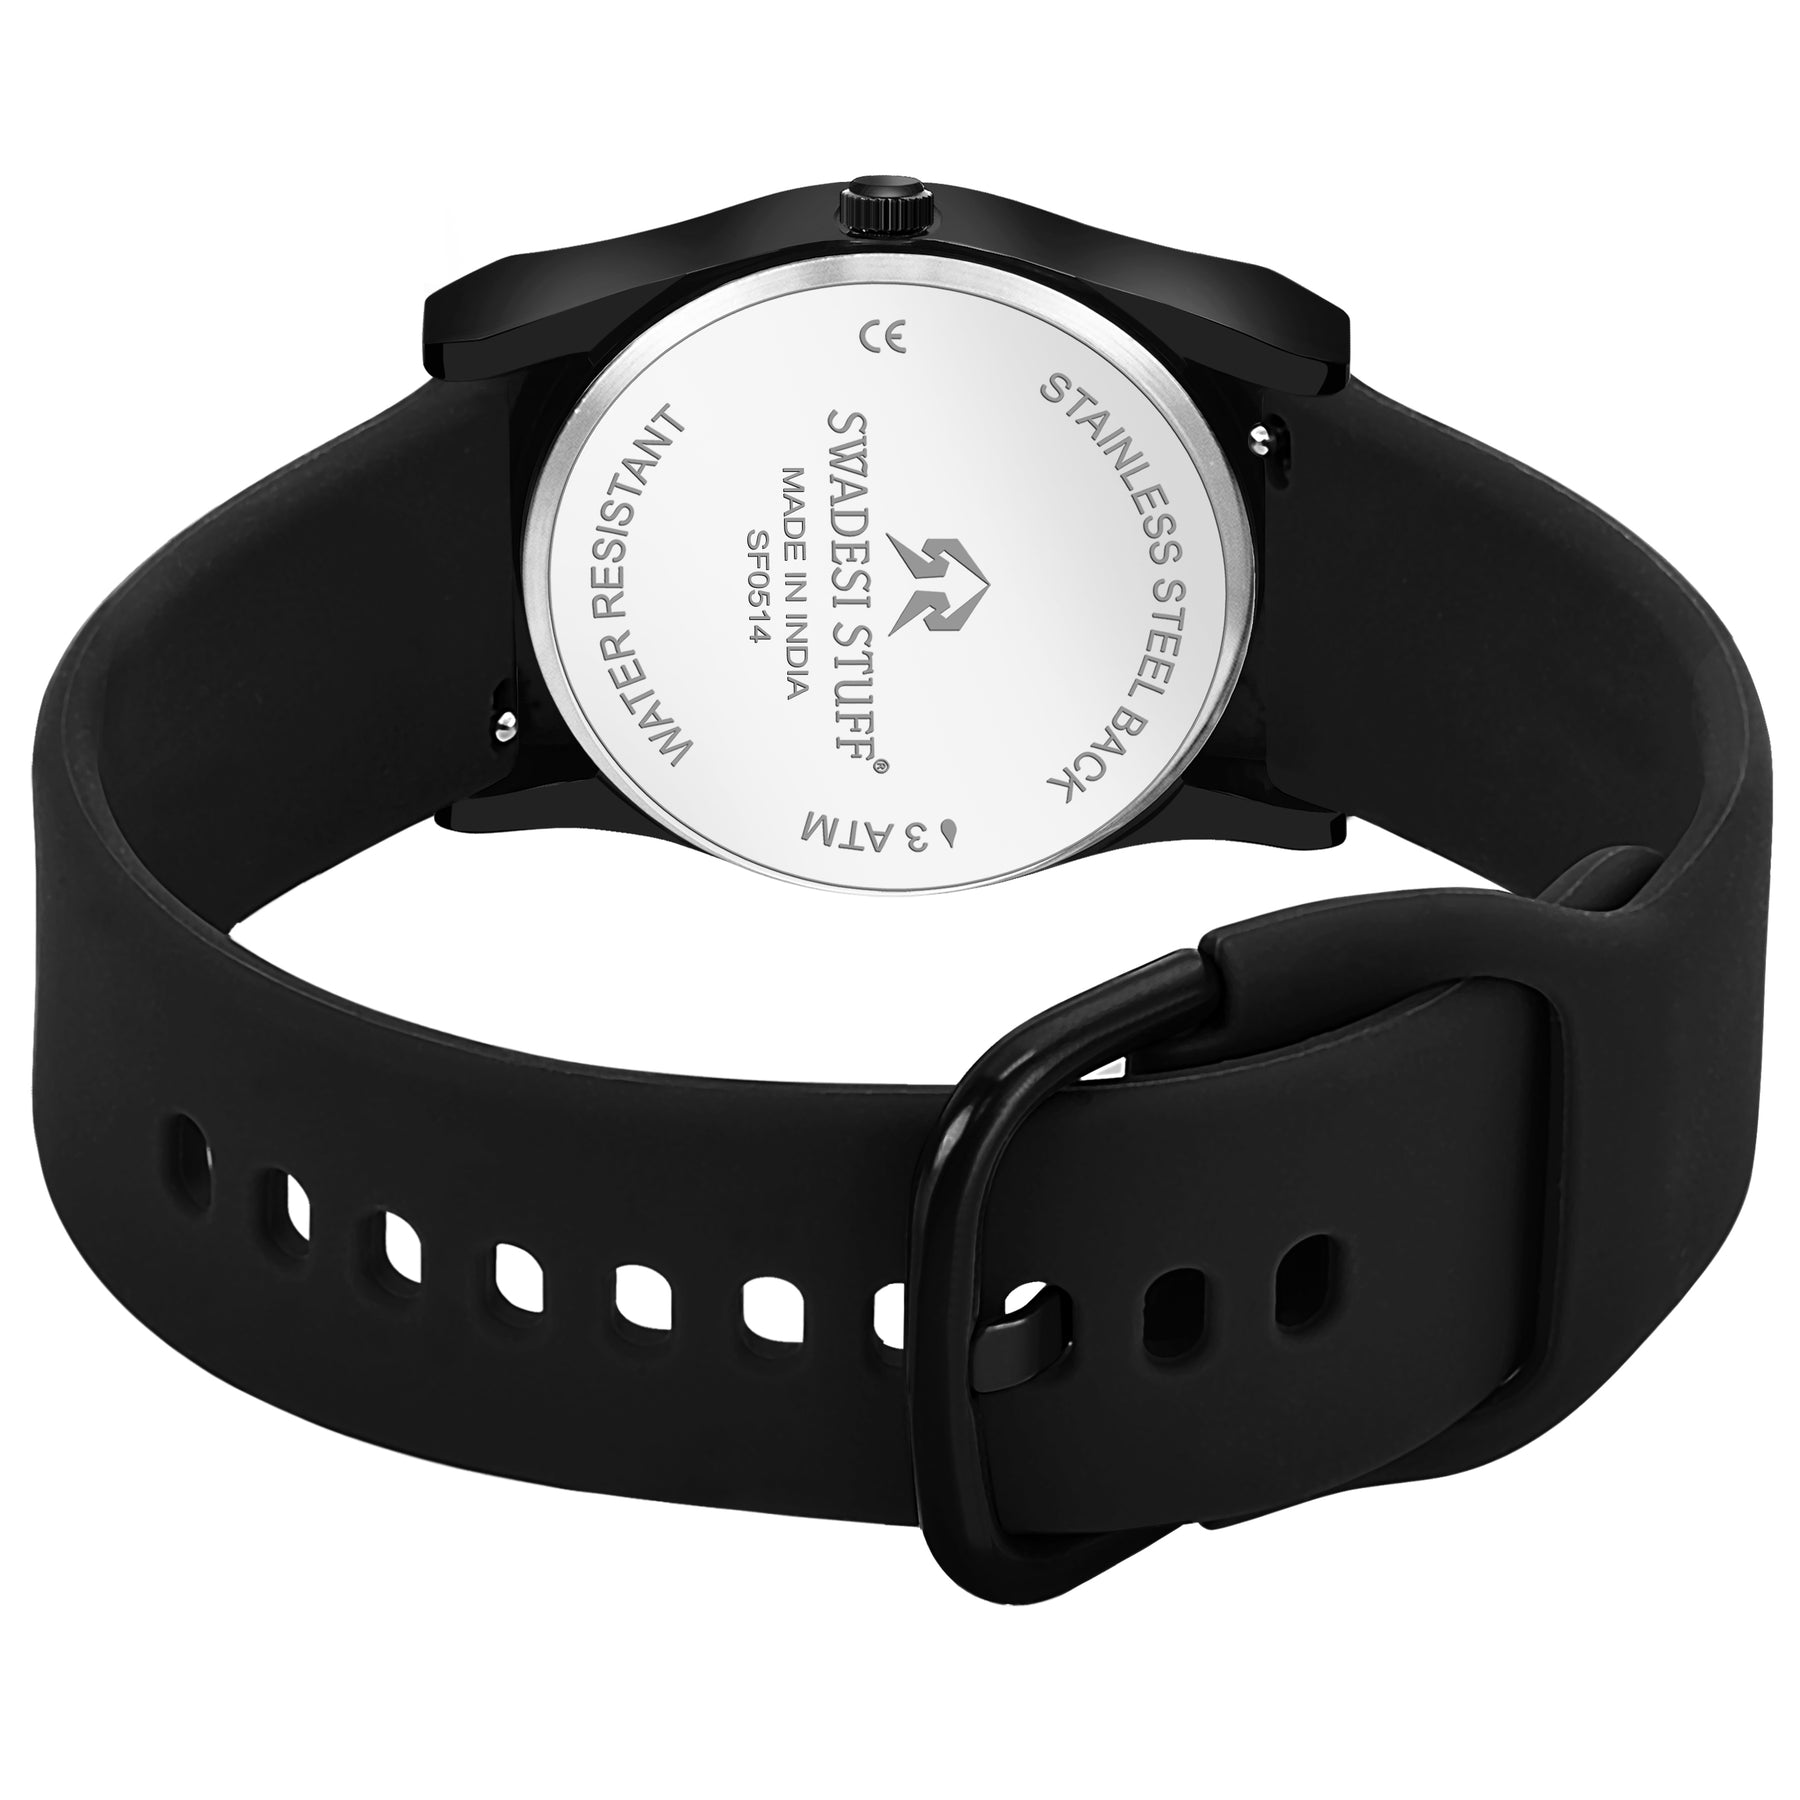 Luna - Black - Premium & Luxurious Watch For Women